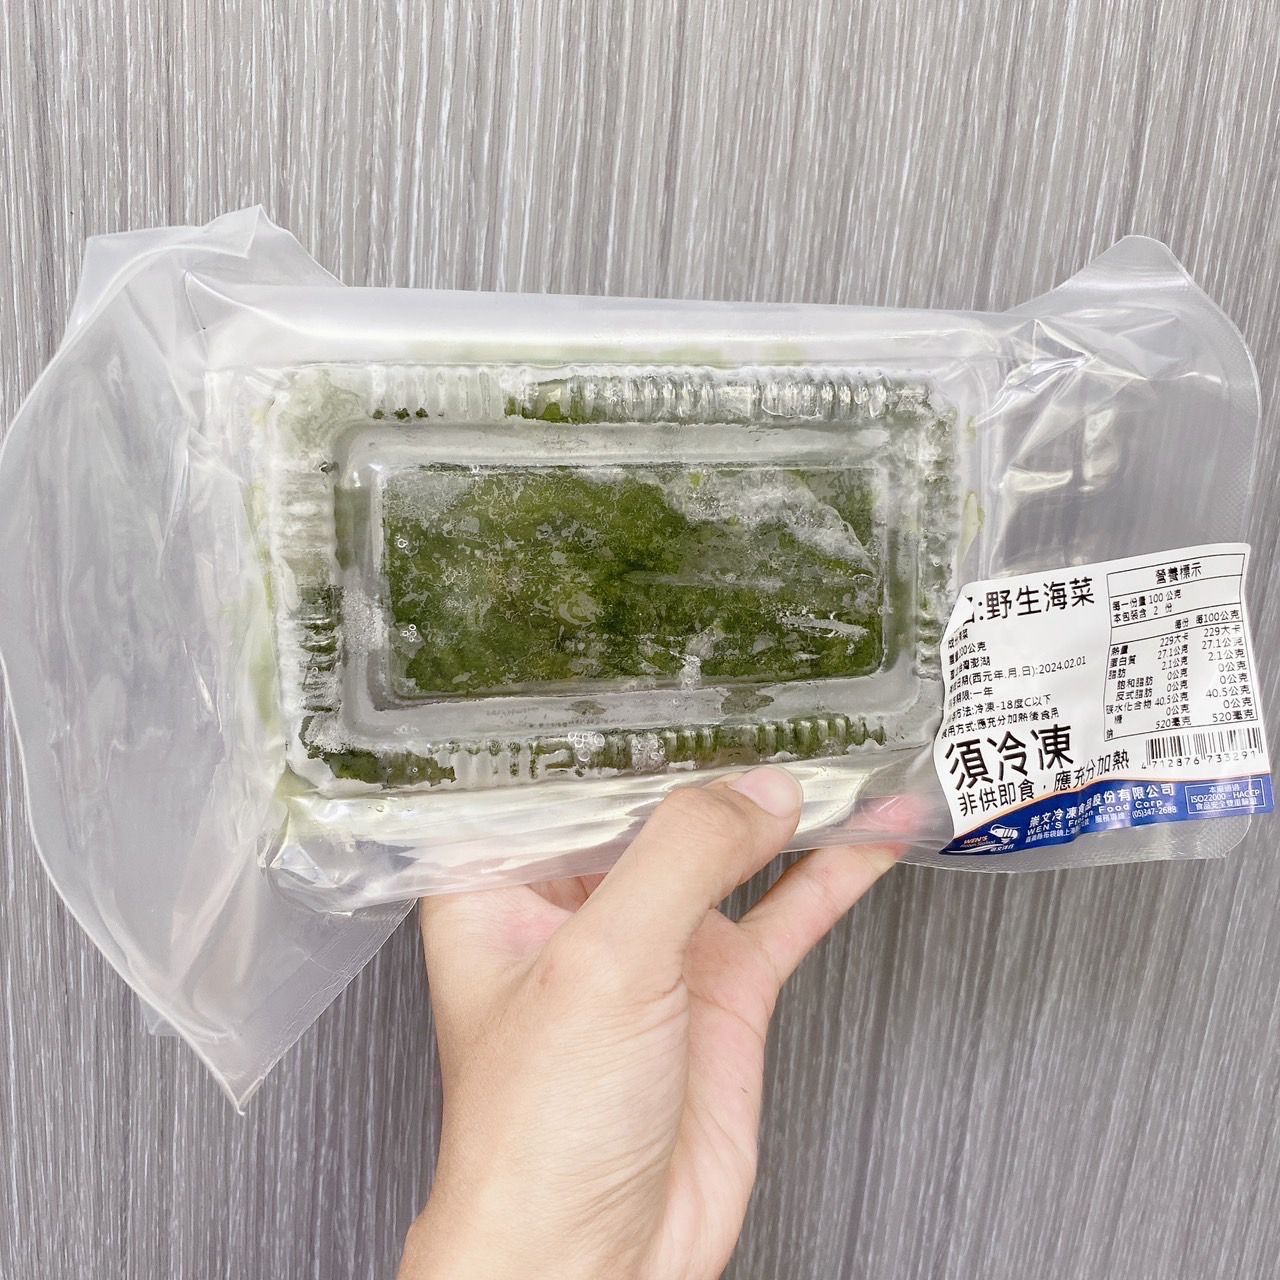 澎湖野生海菜 300g +-10%/盒